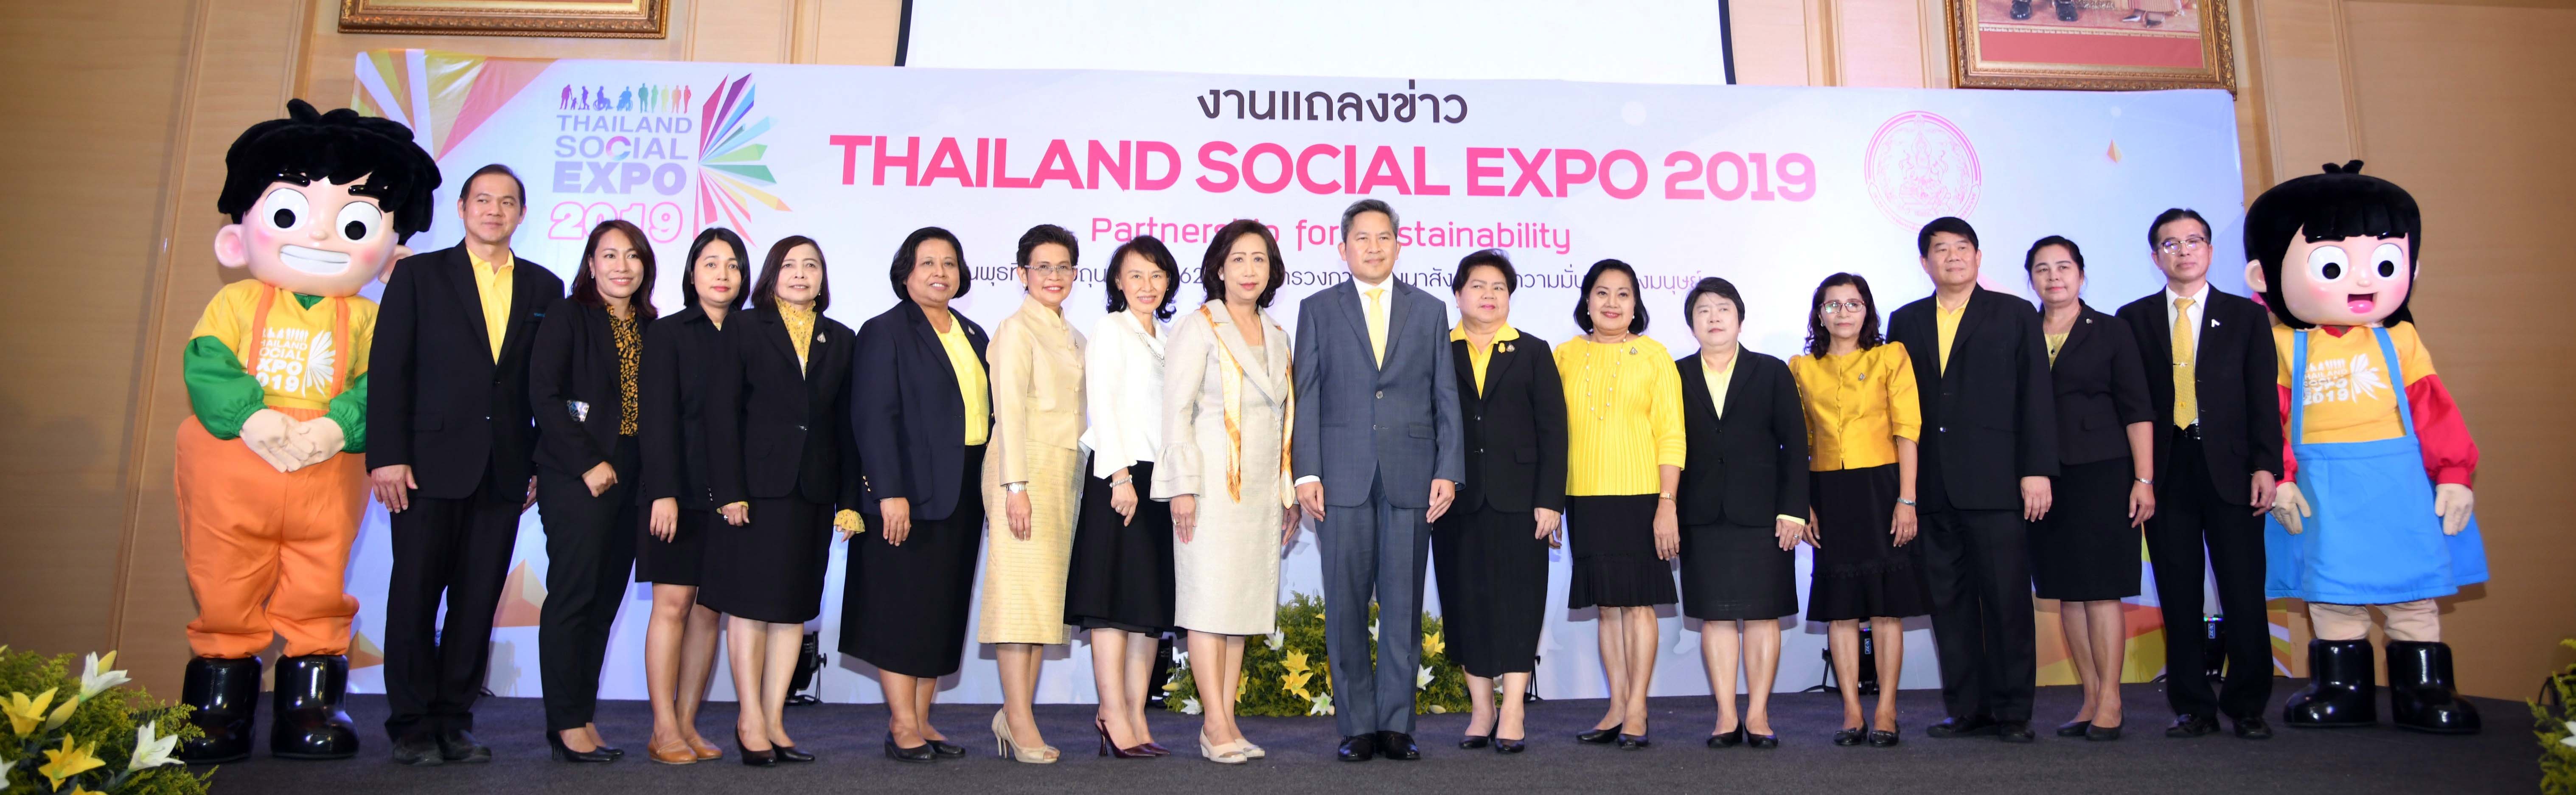 แถลงข่าวงาน Thailand Social Expo ๒๐๑๙ ภายใต้แนวคิด “ร่วมมือ ร่วมใจ สังคมไทยยั่งยืน - Partnership for Sustainability 